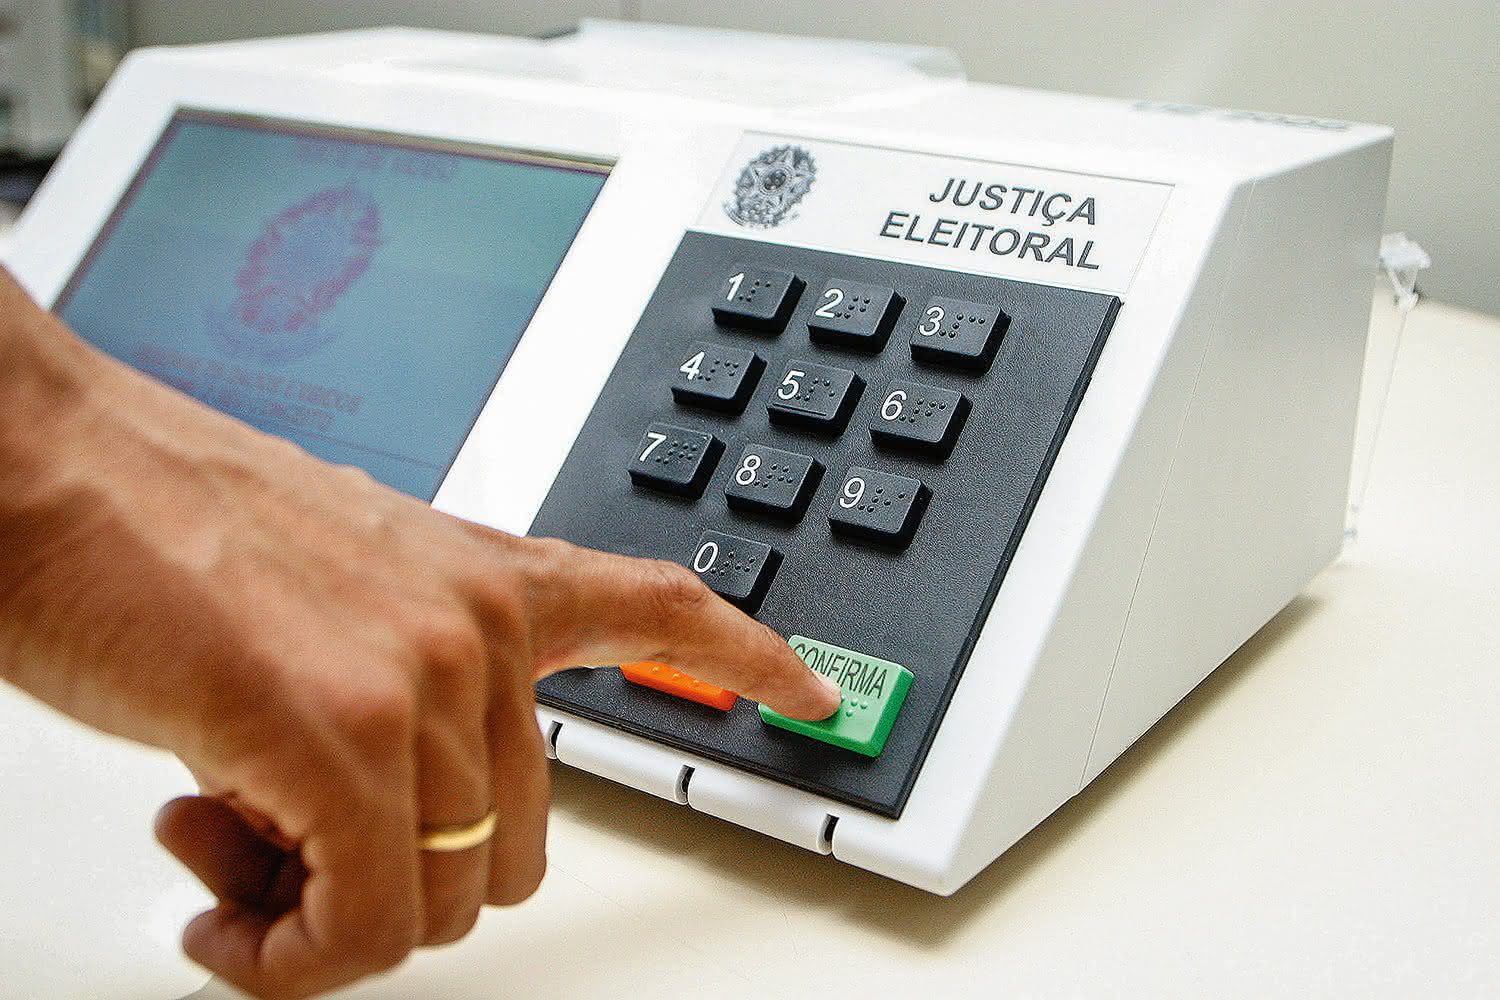 Eleições 2020 Campina Grande: Veja a lista dos vereadores eleitos no município